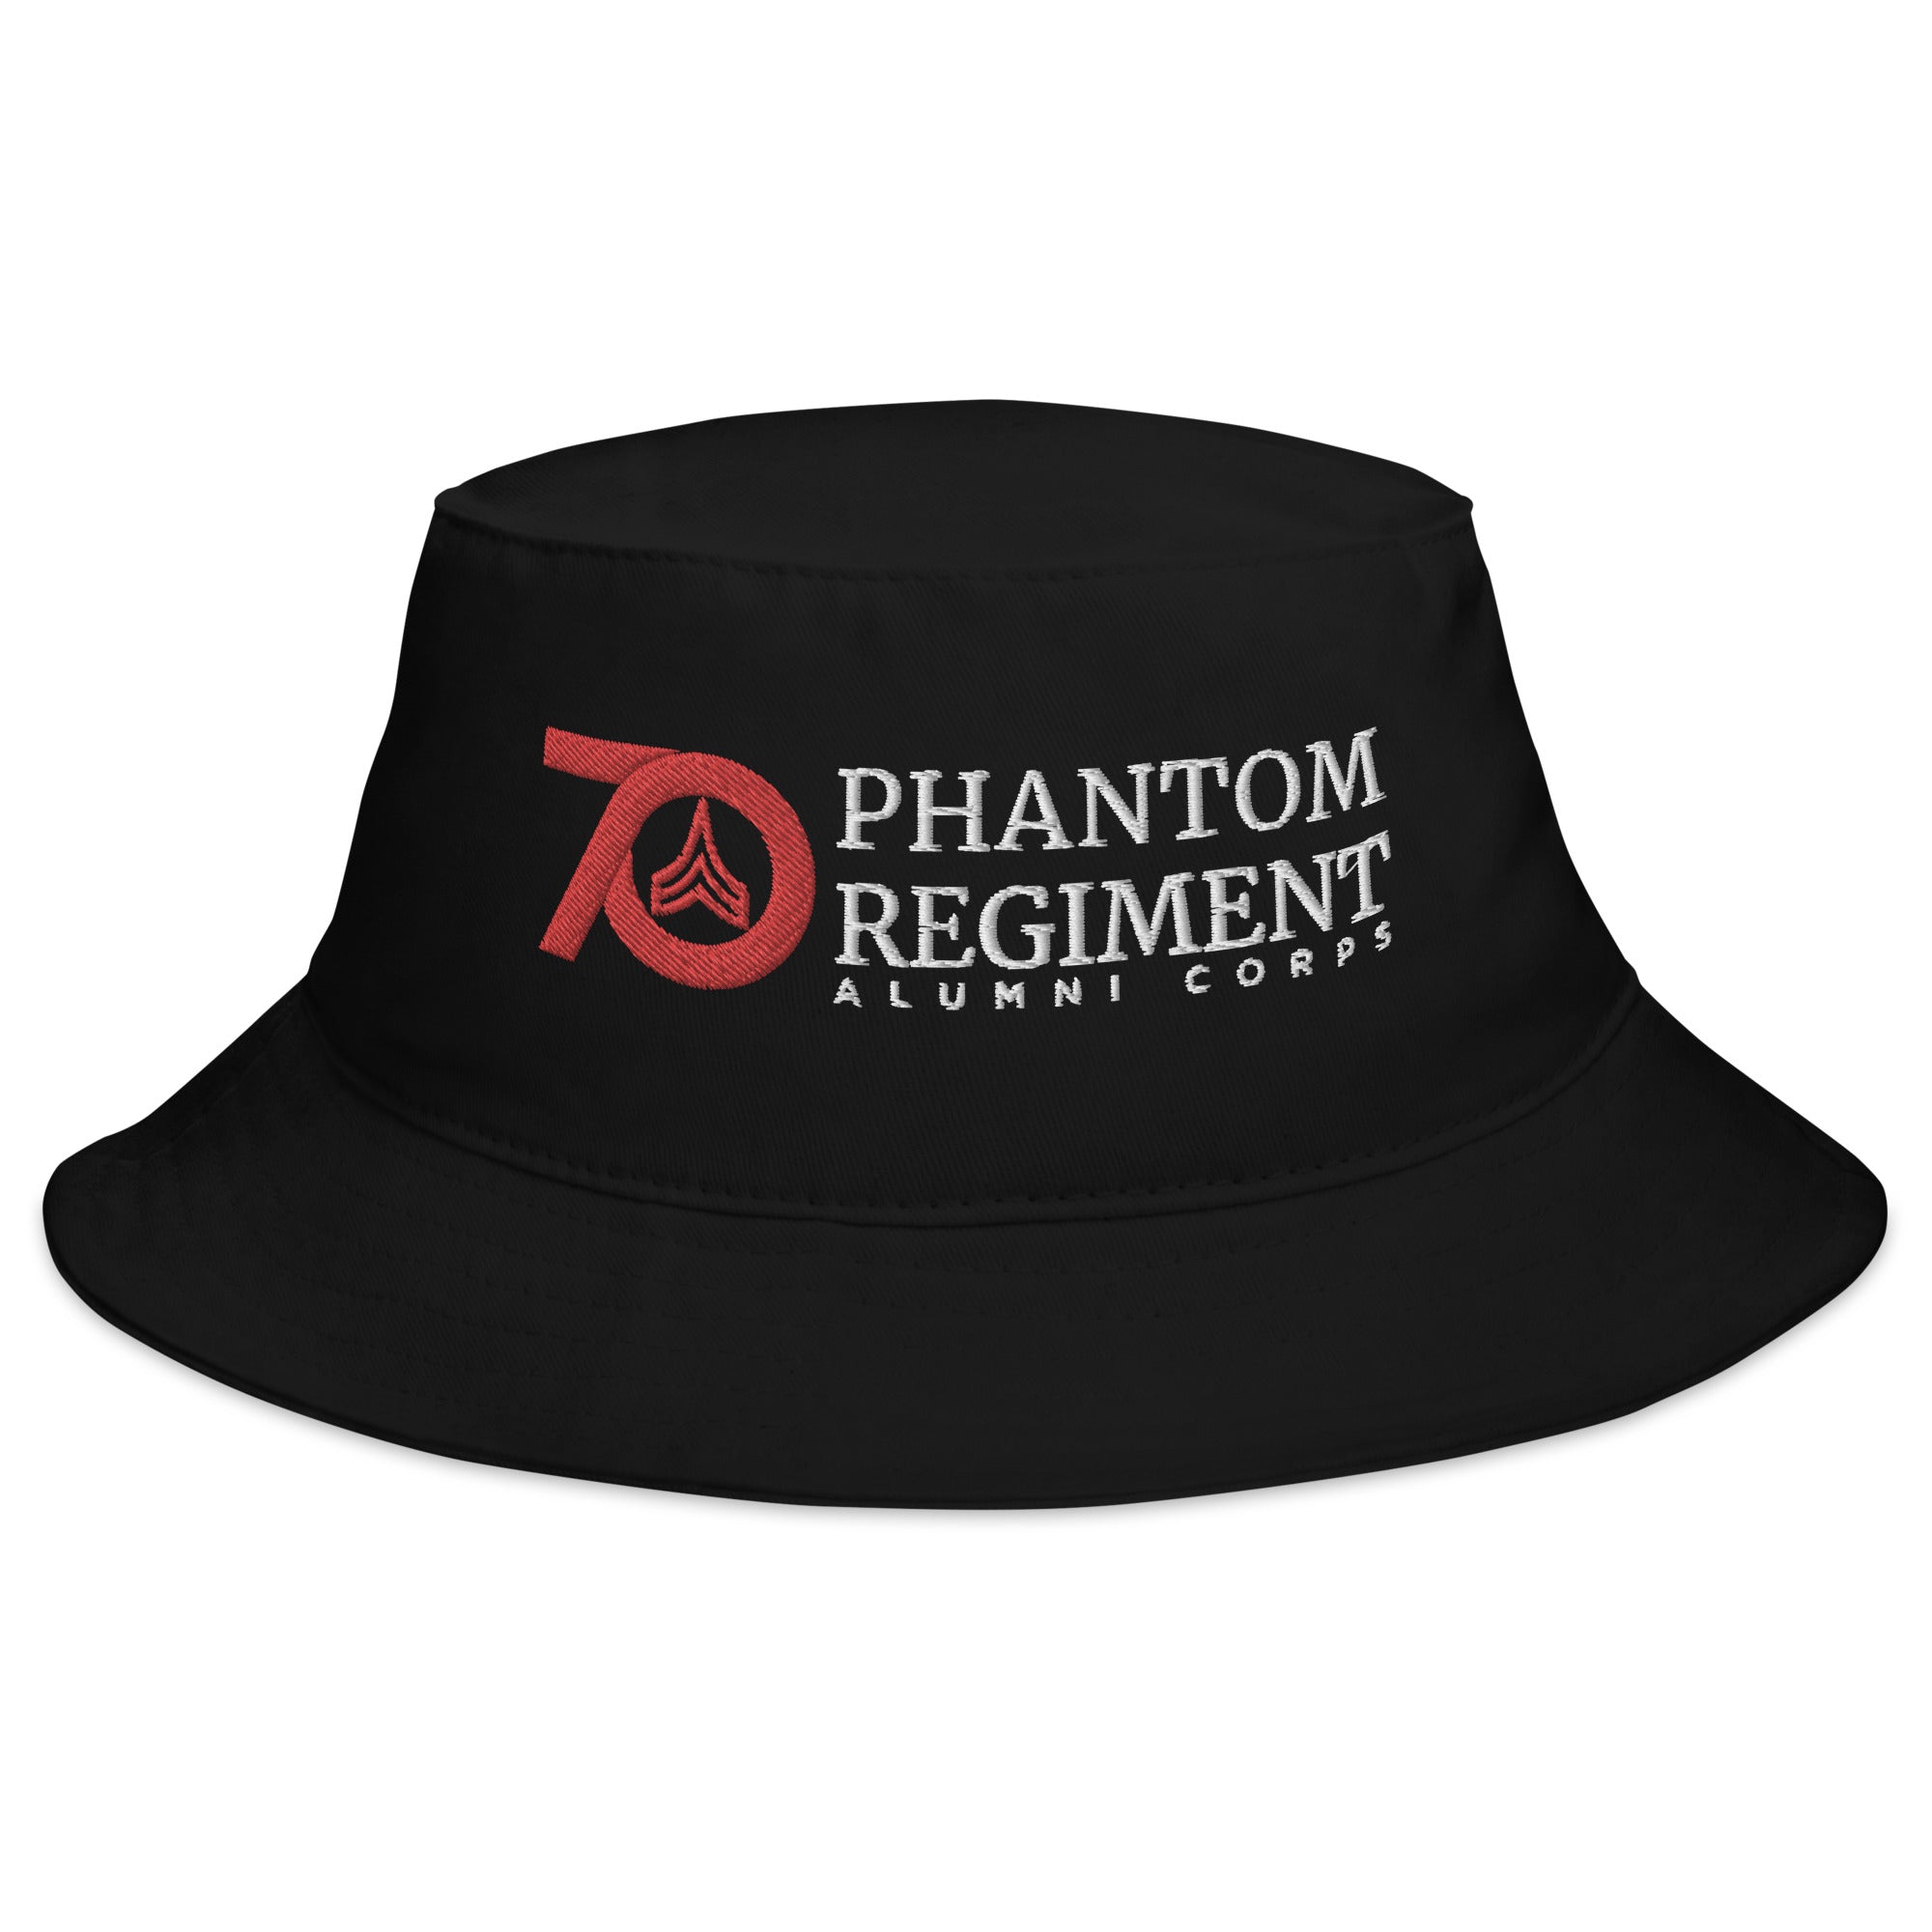 Alumni Corps Bucket Hat